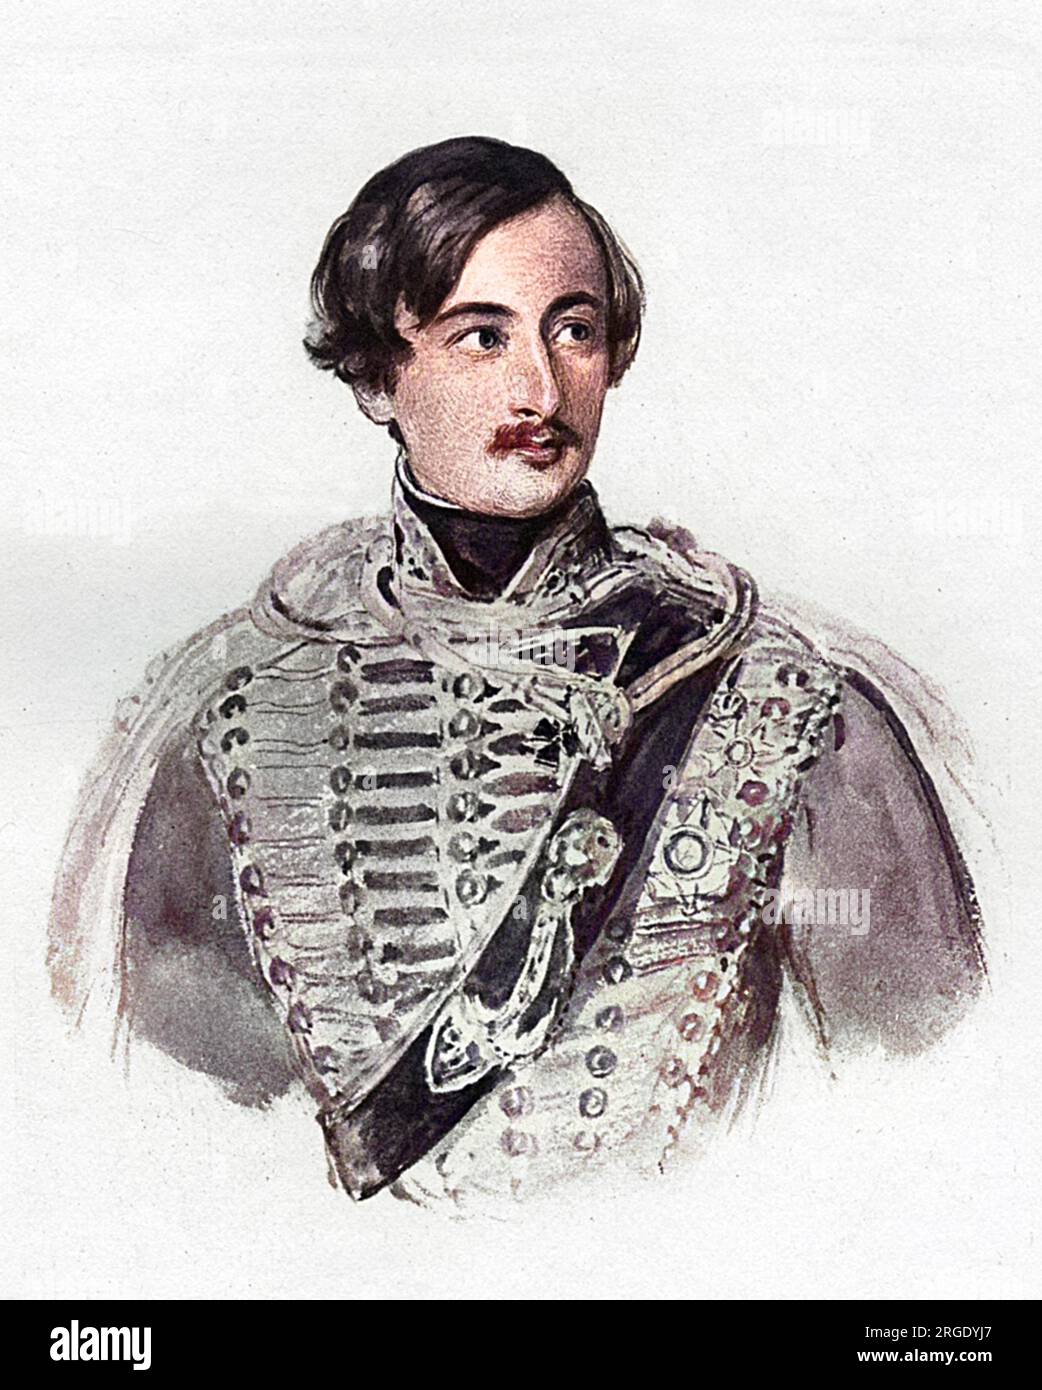 Le comte Alexander Mensdorff-Pouilly (4 août 1813, Coburg û 14 février 1871), était un général, diplomate et homme politique autrichien, dont deux ans en tant que ministre des Affaires étrangères (1864-1866) et un mois de service en tant que ministre-président de l'Autriche. Banque D'Images